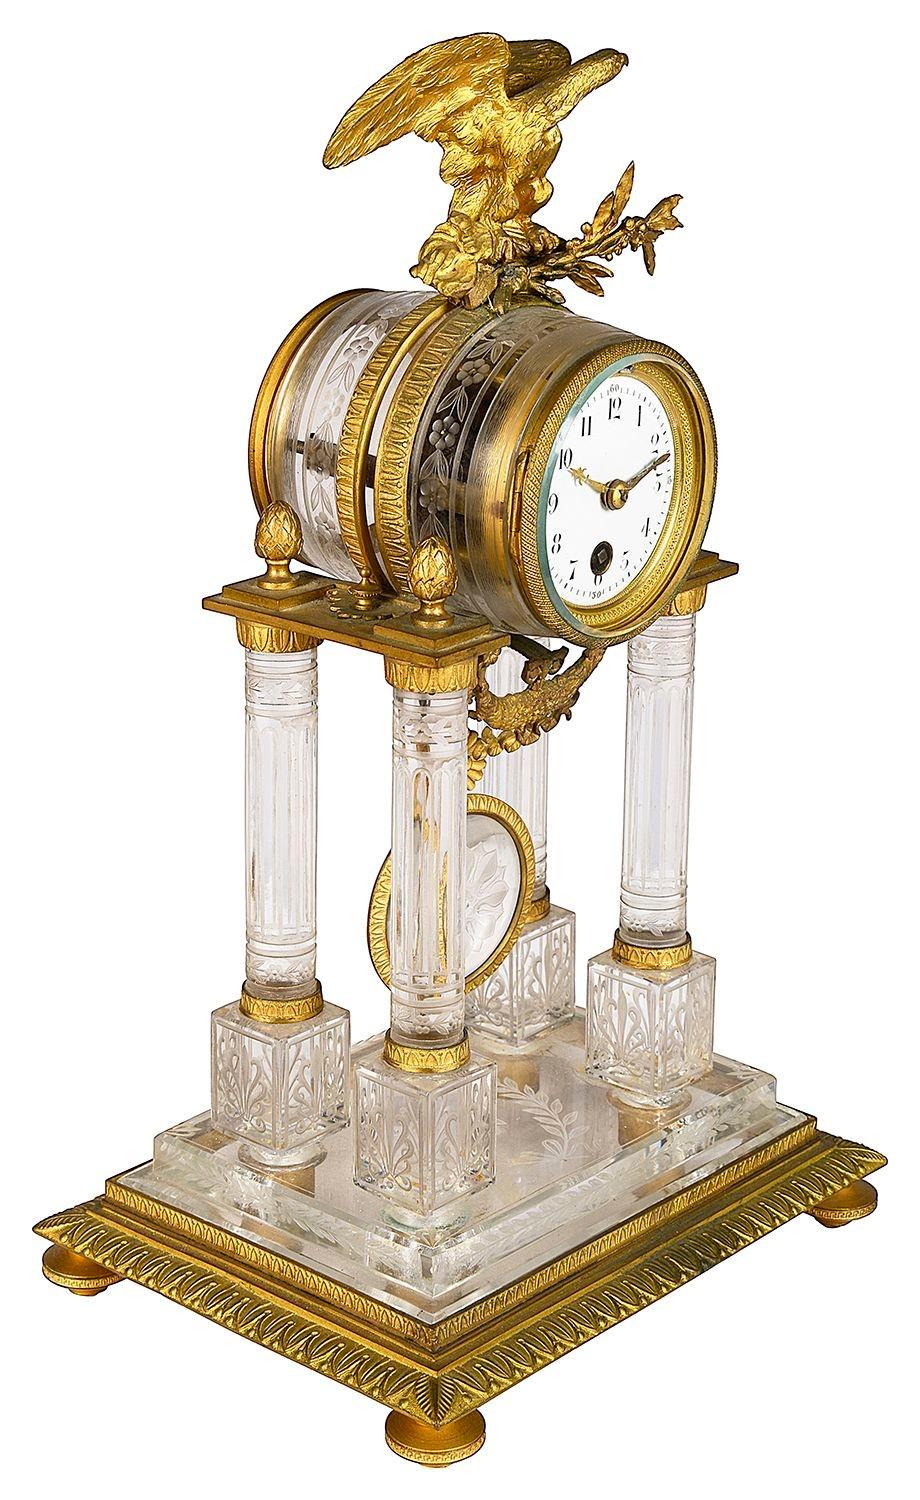 Eine klassische Kristall 19. Jahrhundert Französisch Empire-Stil Portikus Mantel Uhr, mit einem vergoldeten Ormolu Adler, weißem Emaille Zifferblatt und vier Säulen unterstützt eingraviert Dekoration und einem Sockel Basis.
 
Charge 73 62104. DZZZN